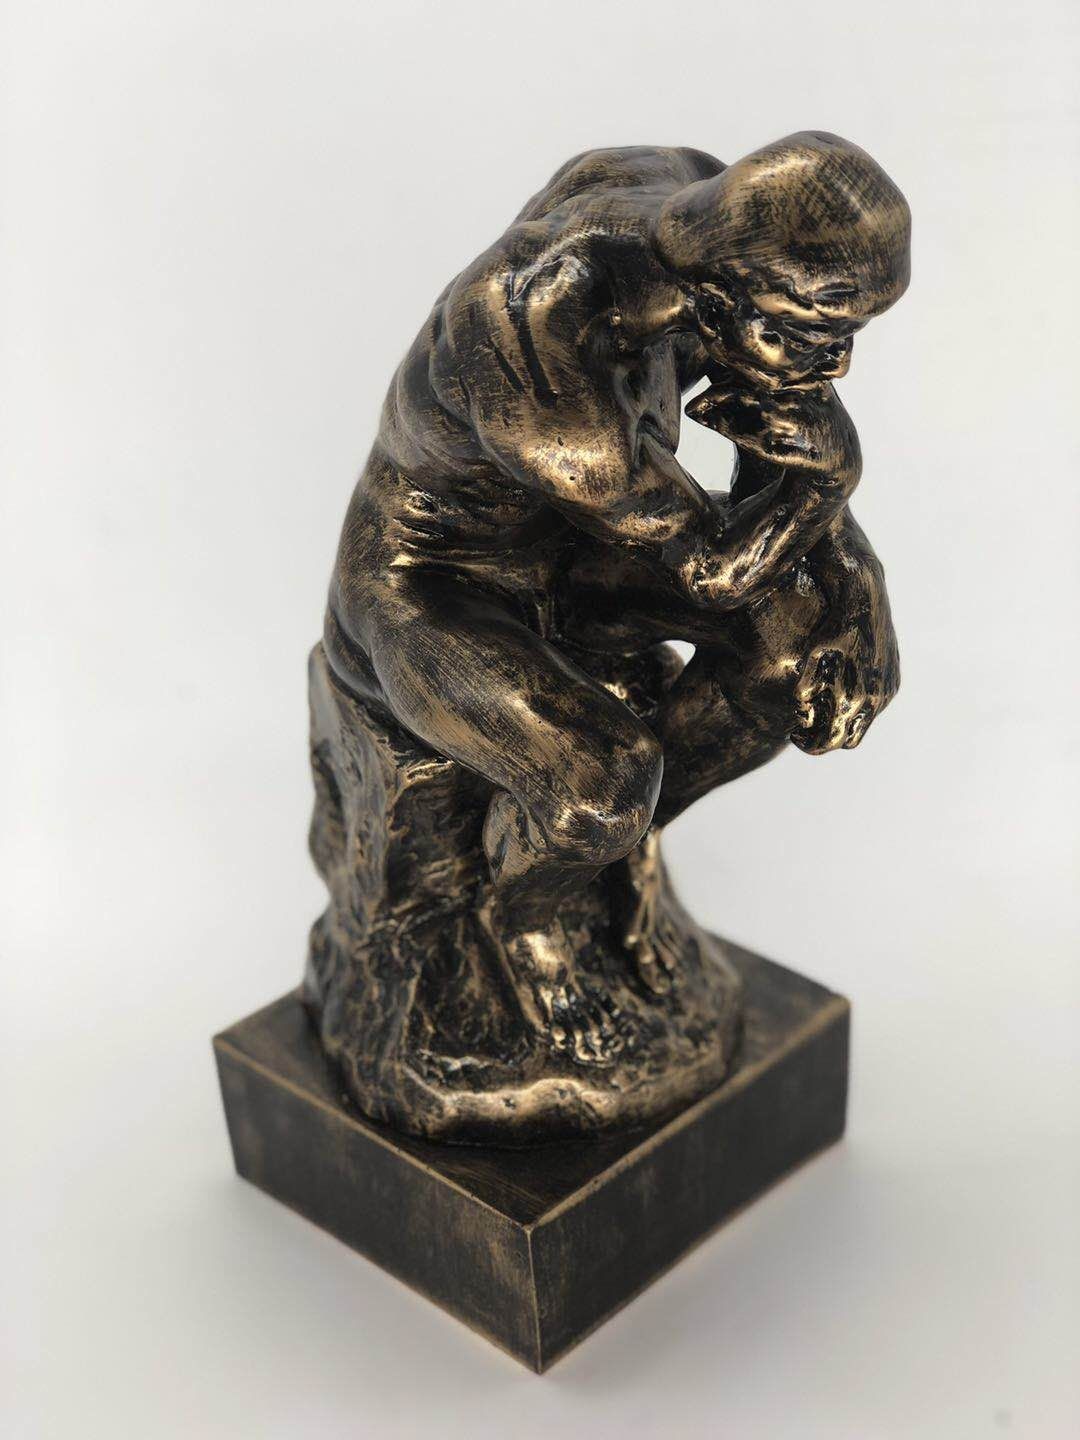 NEW THE THINKER by Rodin STATUE Light BRONZE EUROPEAN ART SCULPTURE FIGURE Gift